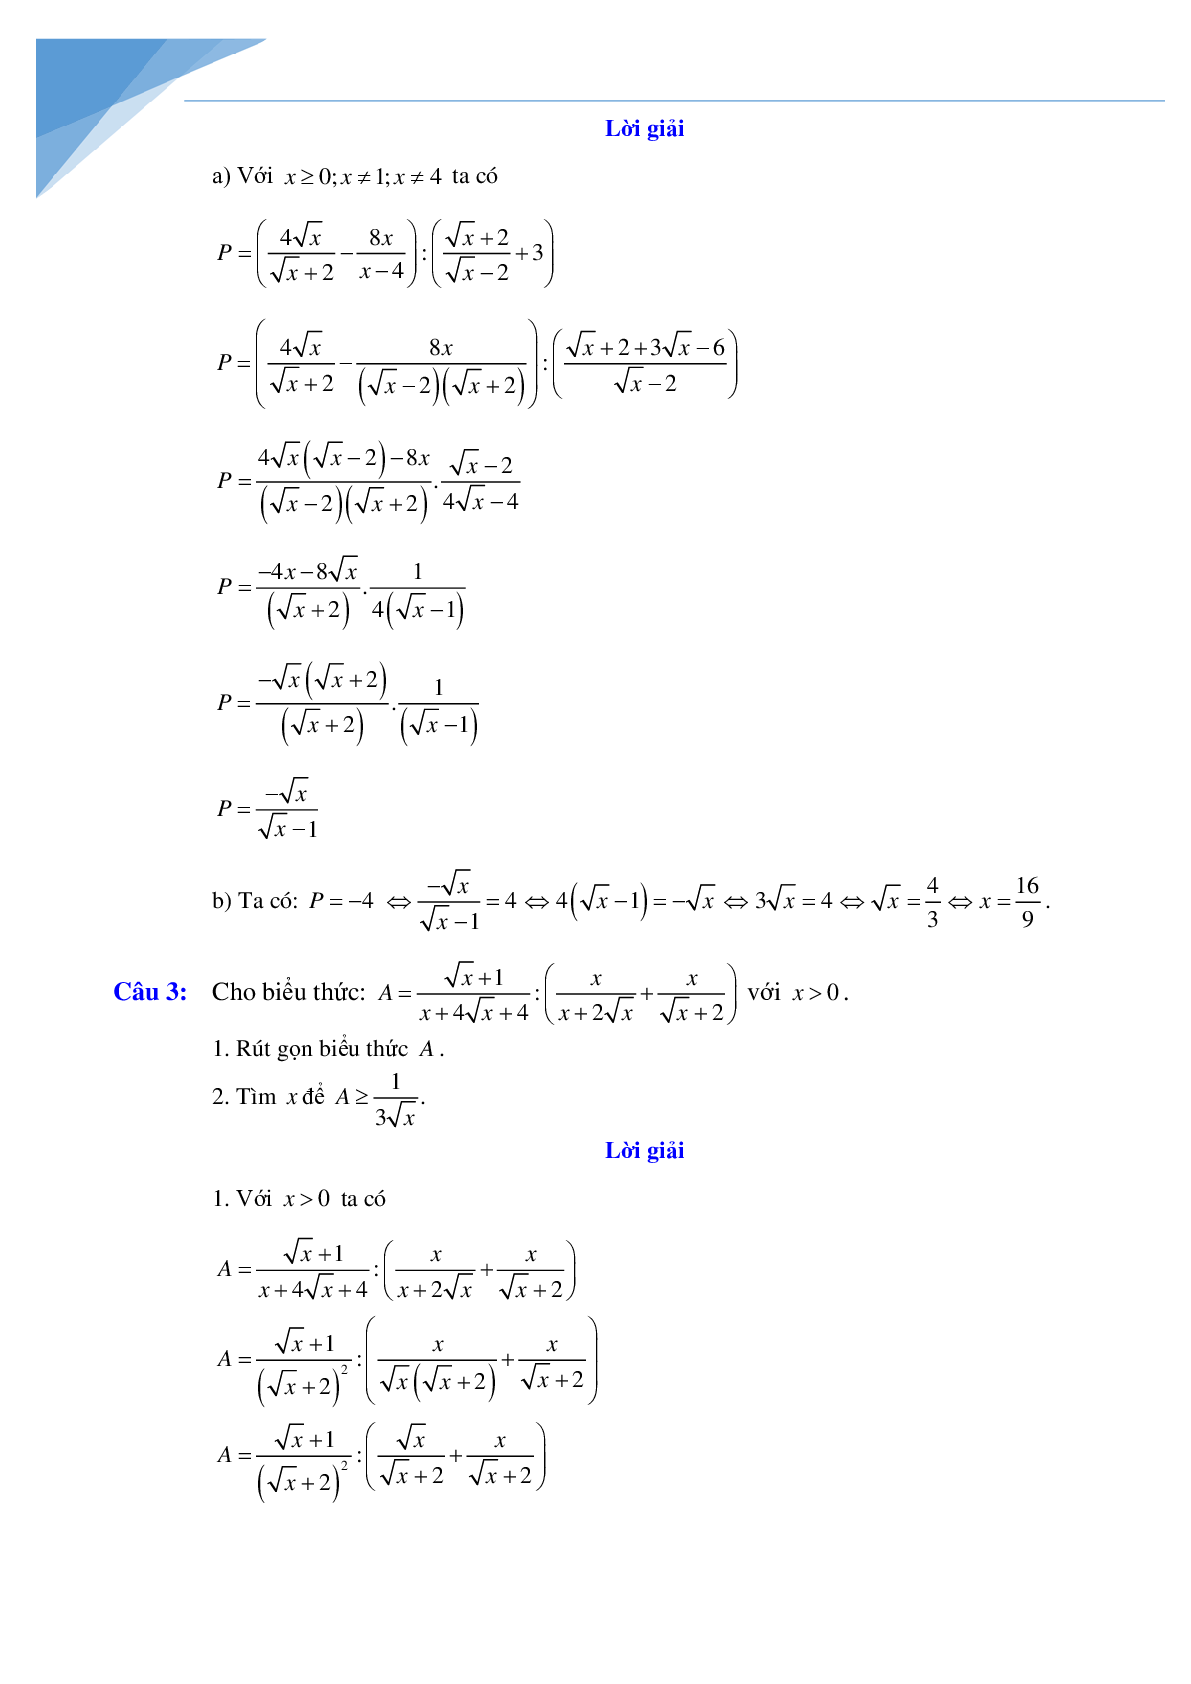 Rút gọn biểu thức và bài toán liên quan (trang 5)